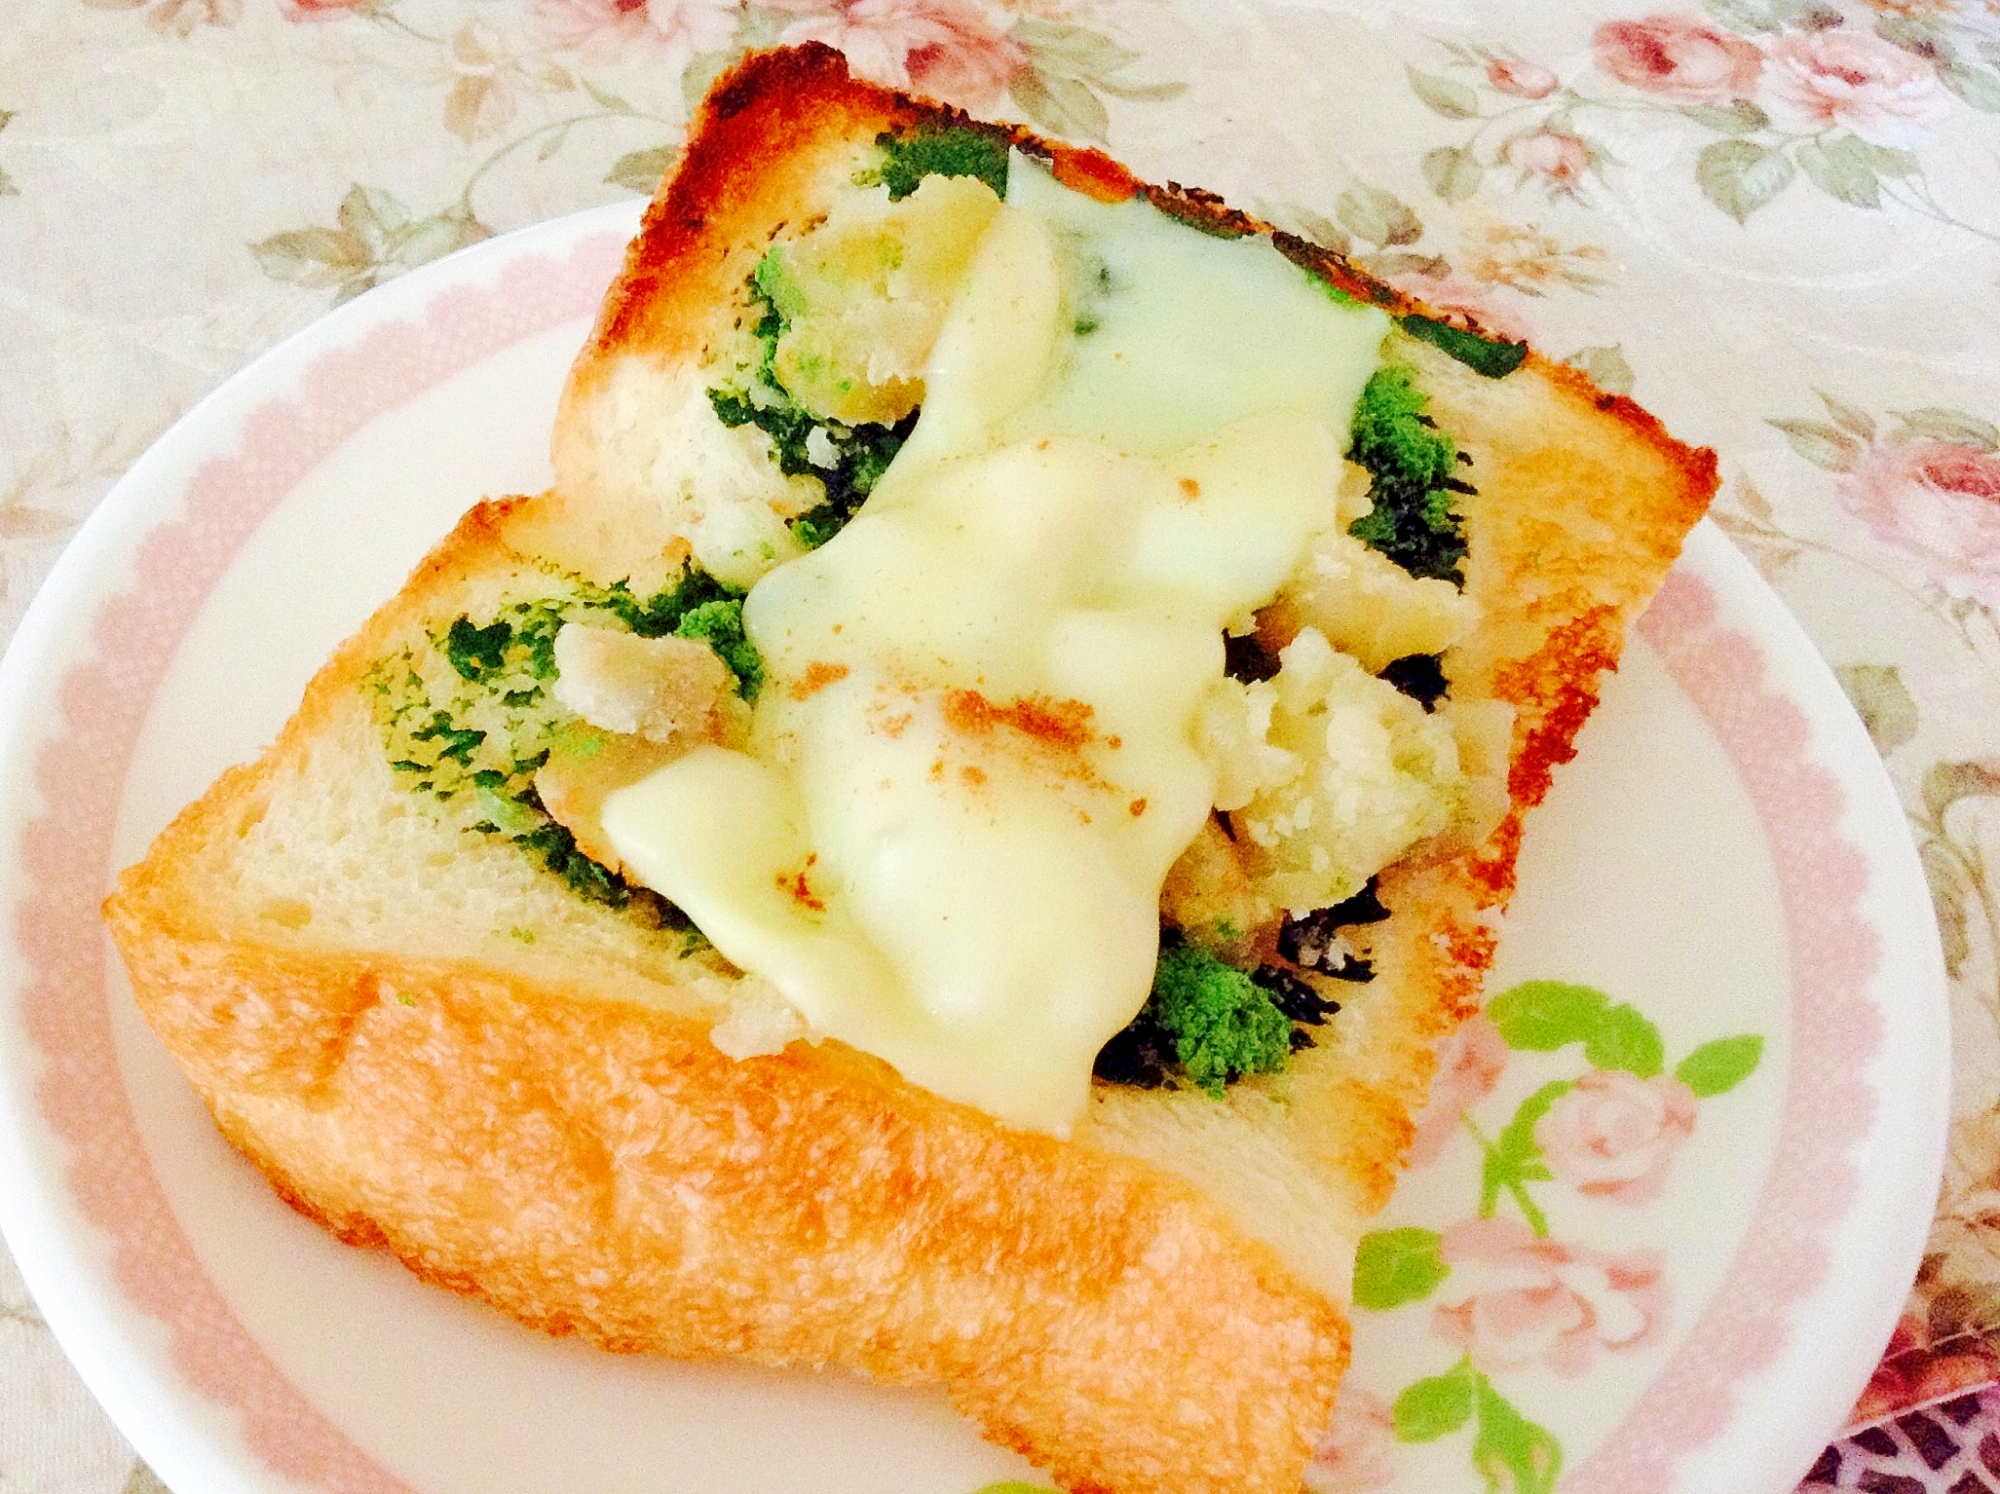 さつま芋☆練乳バター☆シナモン☆青汁チーズトースト